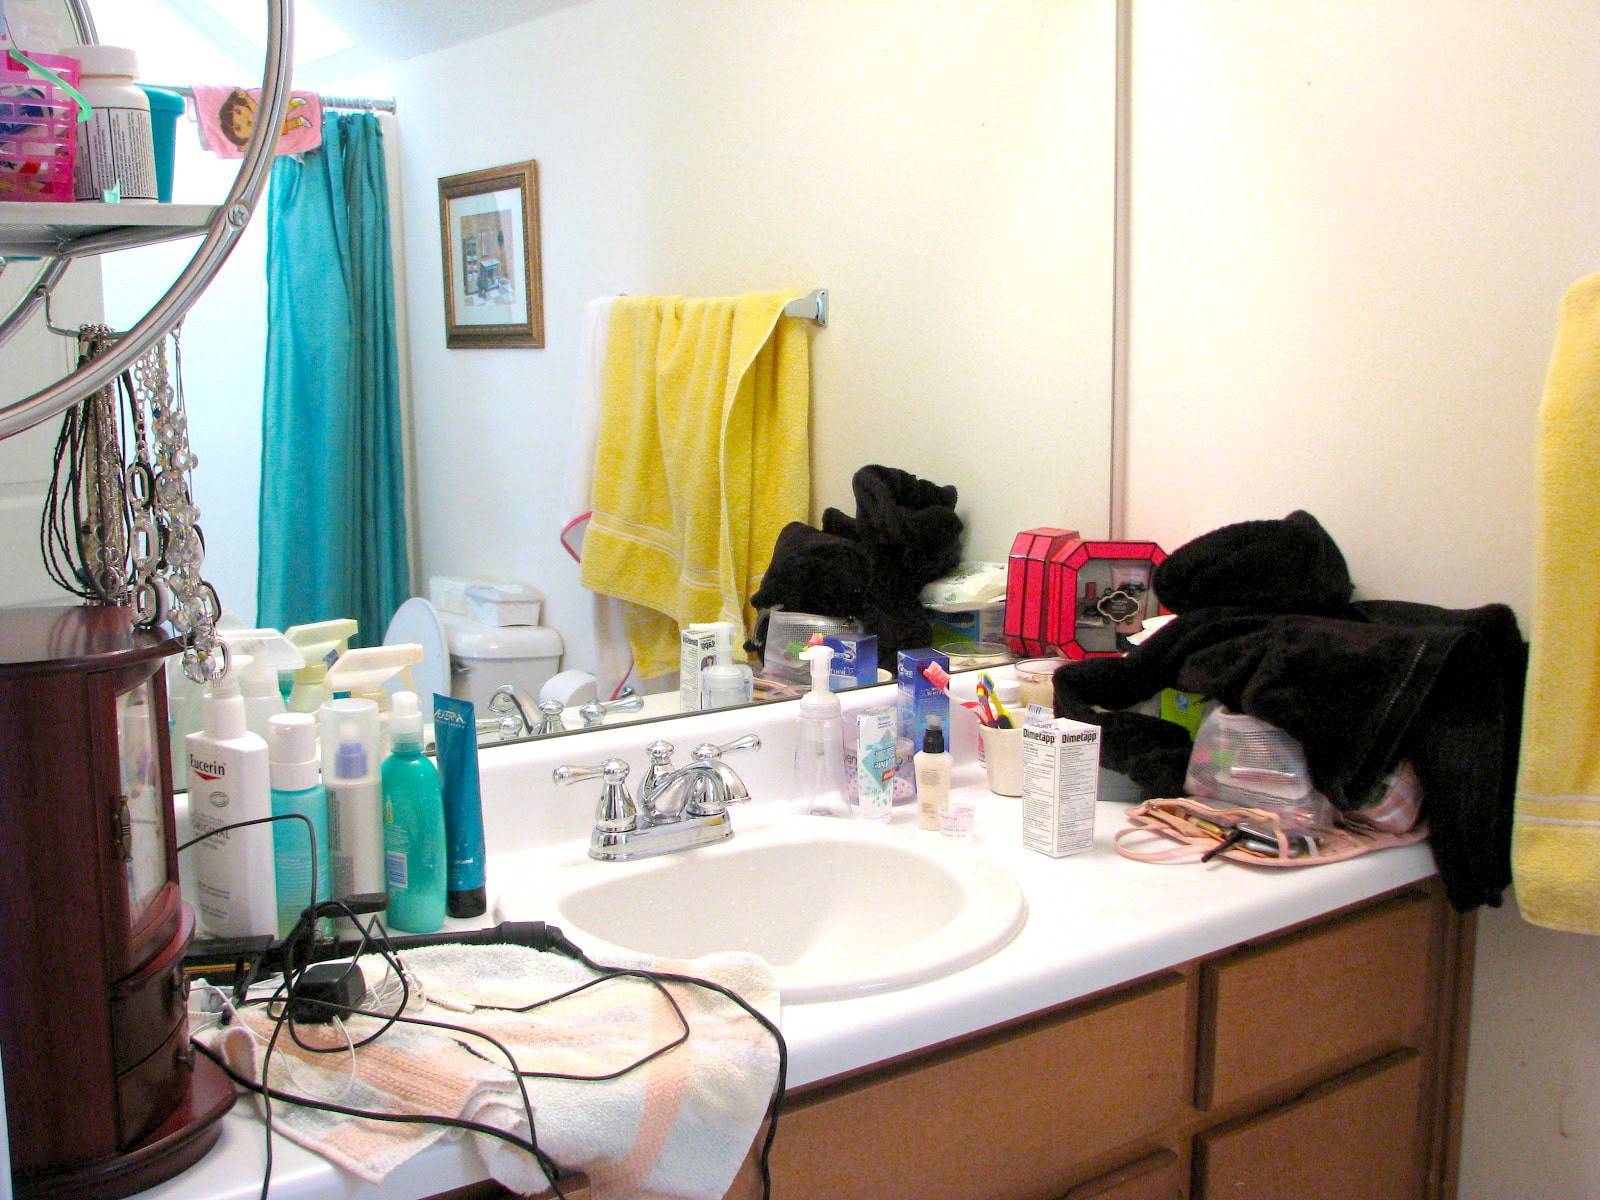 Трусы на батарее, грязная шторка и еще 7 вещей в ванной комнате, которые делают ее неряшливой и неуютной